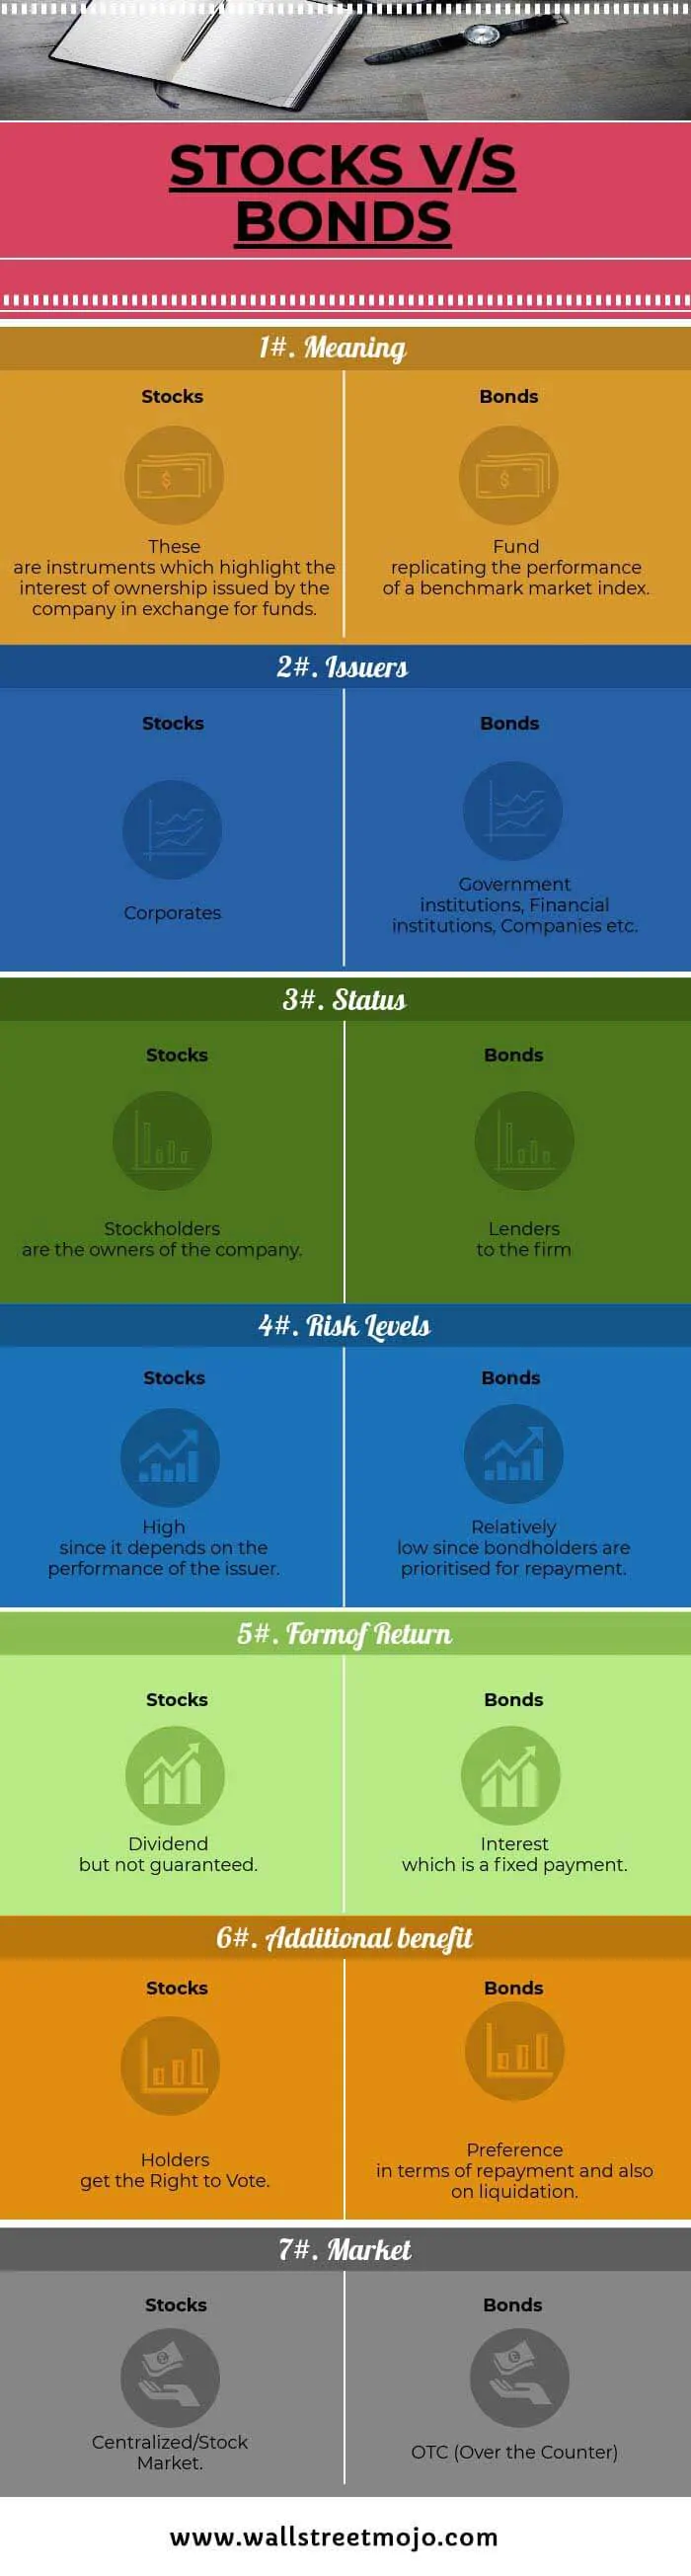 STOCKS-VS-BONDS